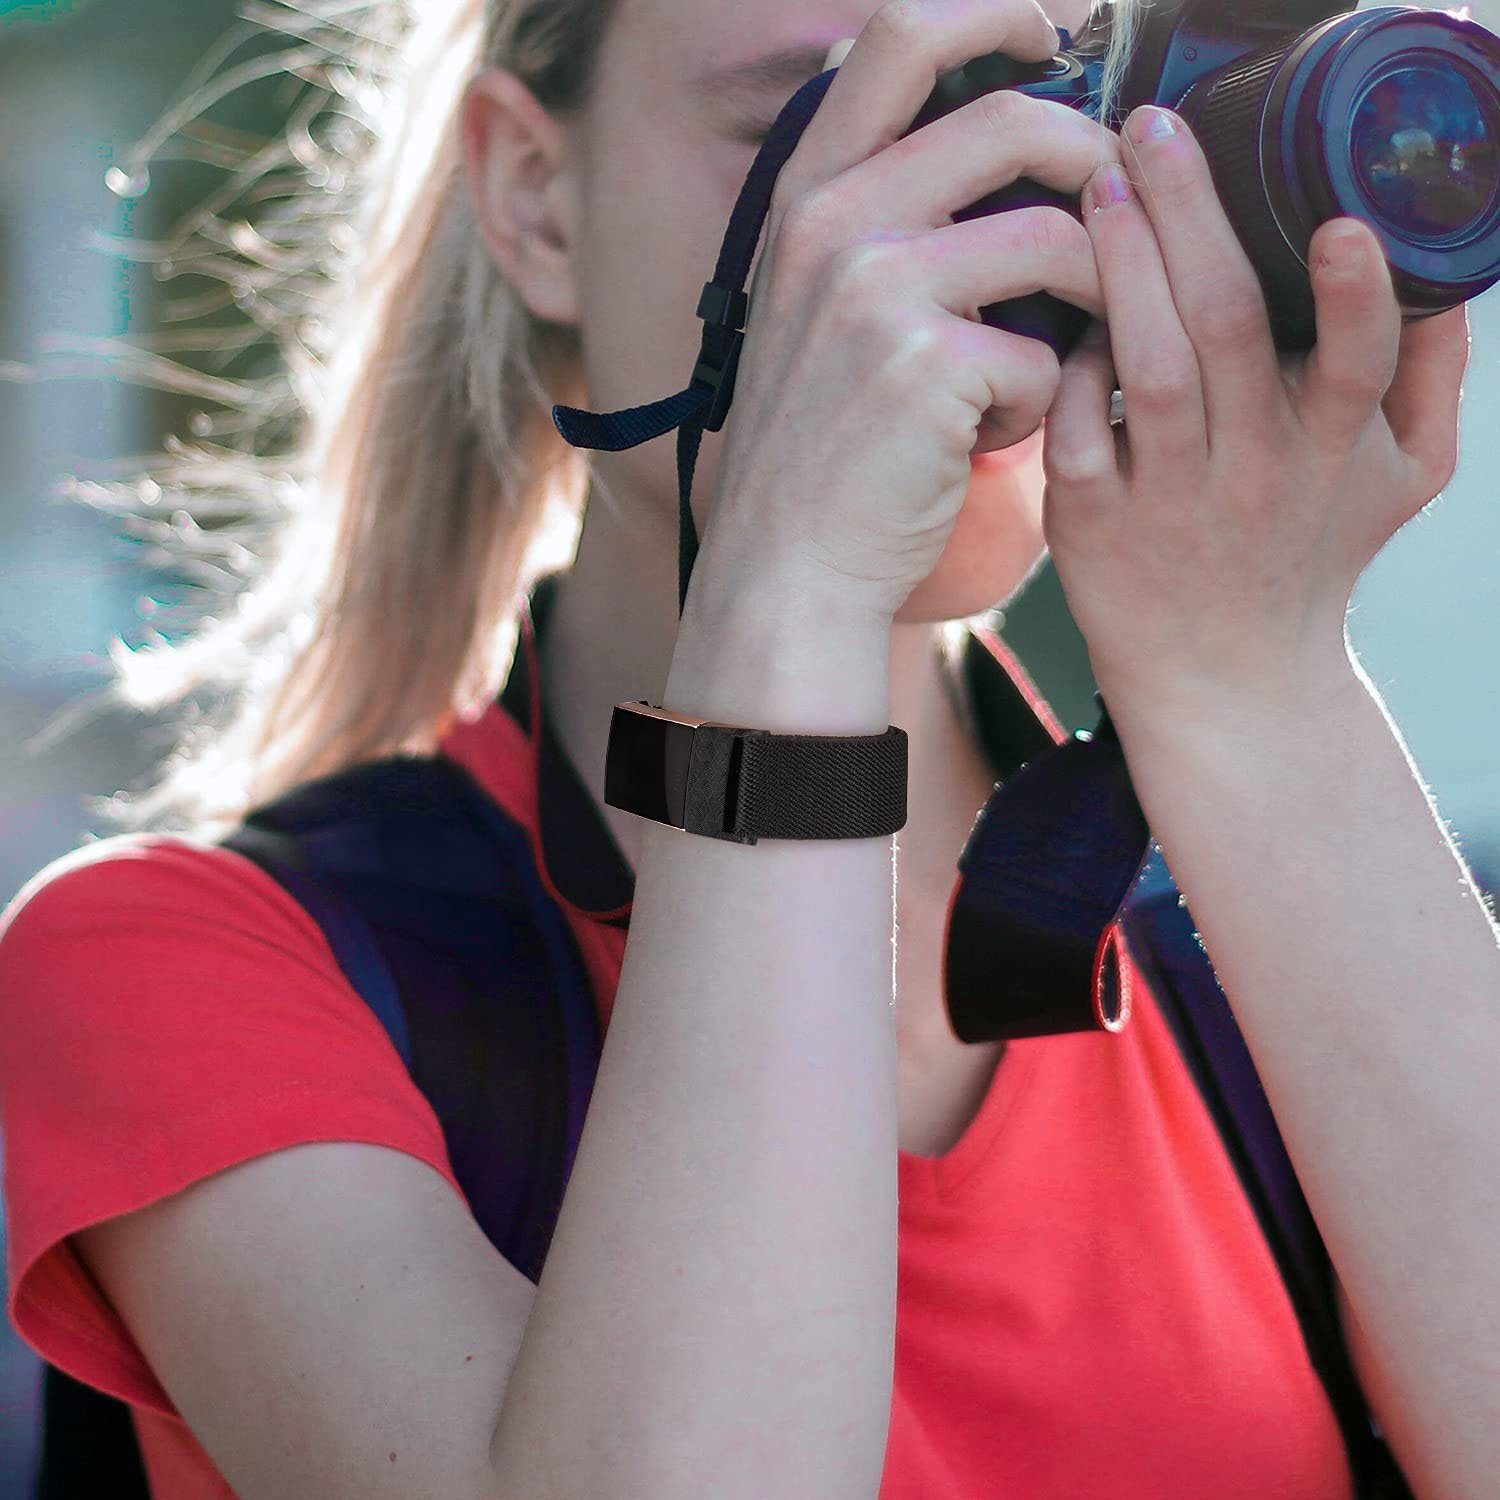 Stück Uhrenarmband Armband 2 Elastische Charge zggzerg Fitbit Schwarz+Leopard Kompatibel für